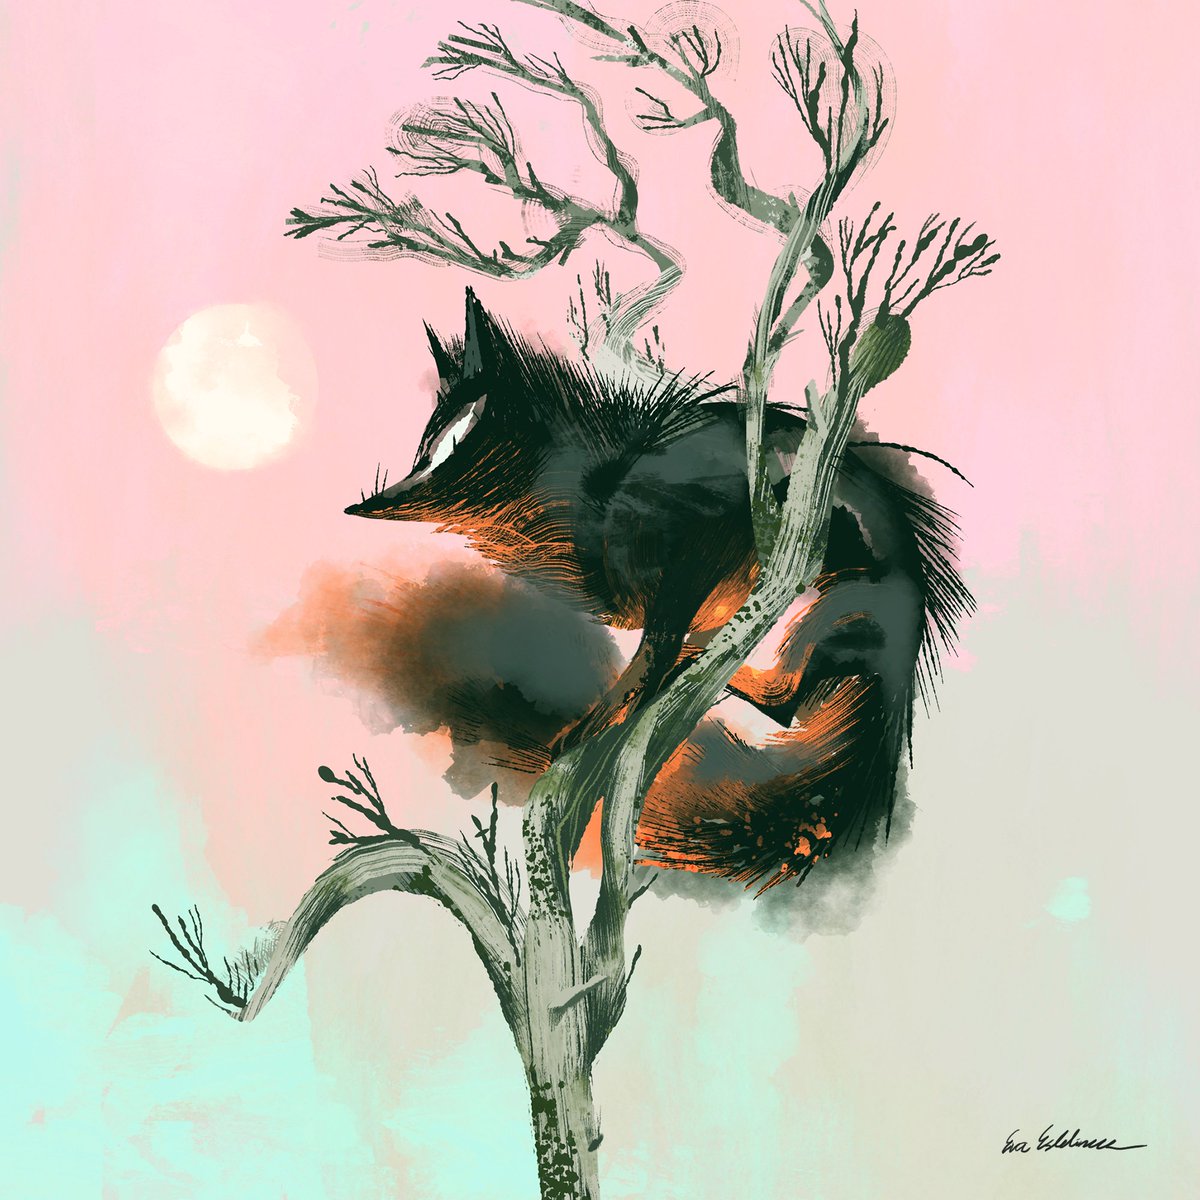 「Tulikettu (Firefox), 2018 」|Eva Eskelinenのイラスト